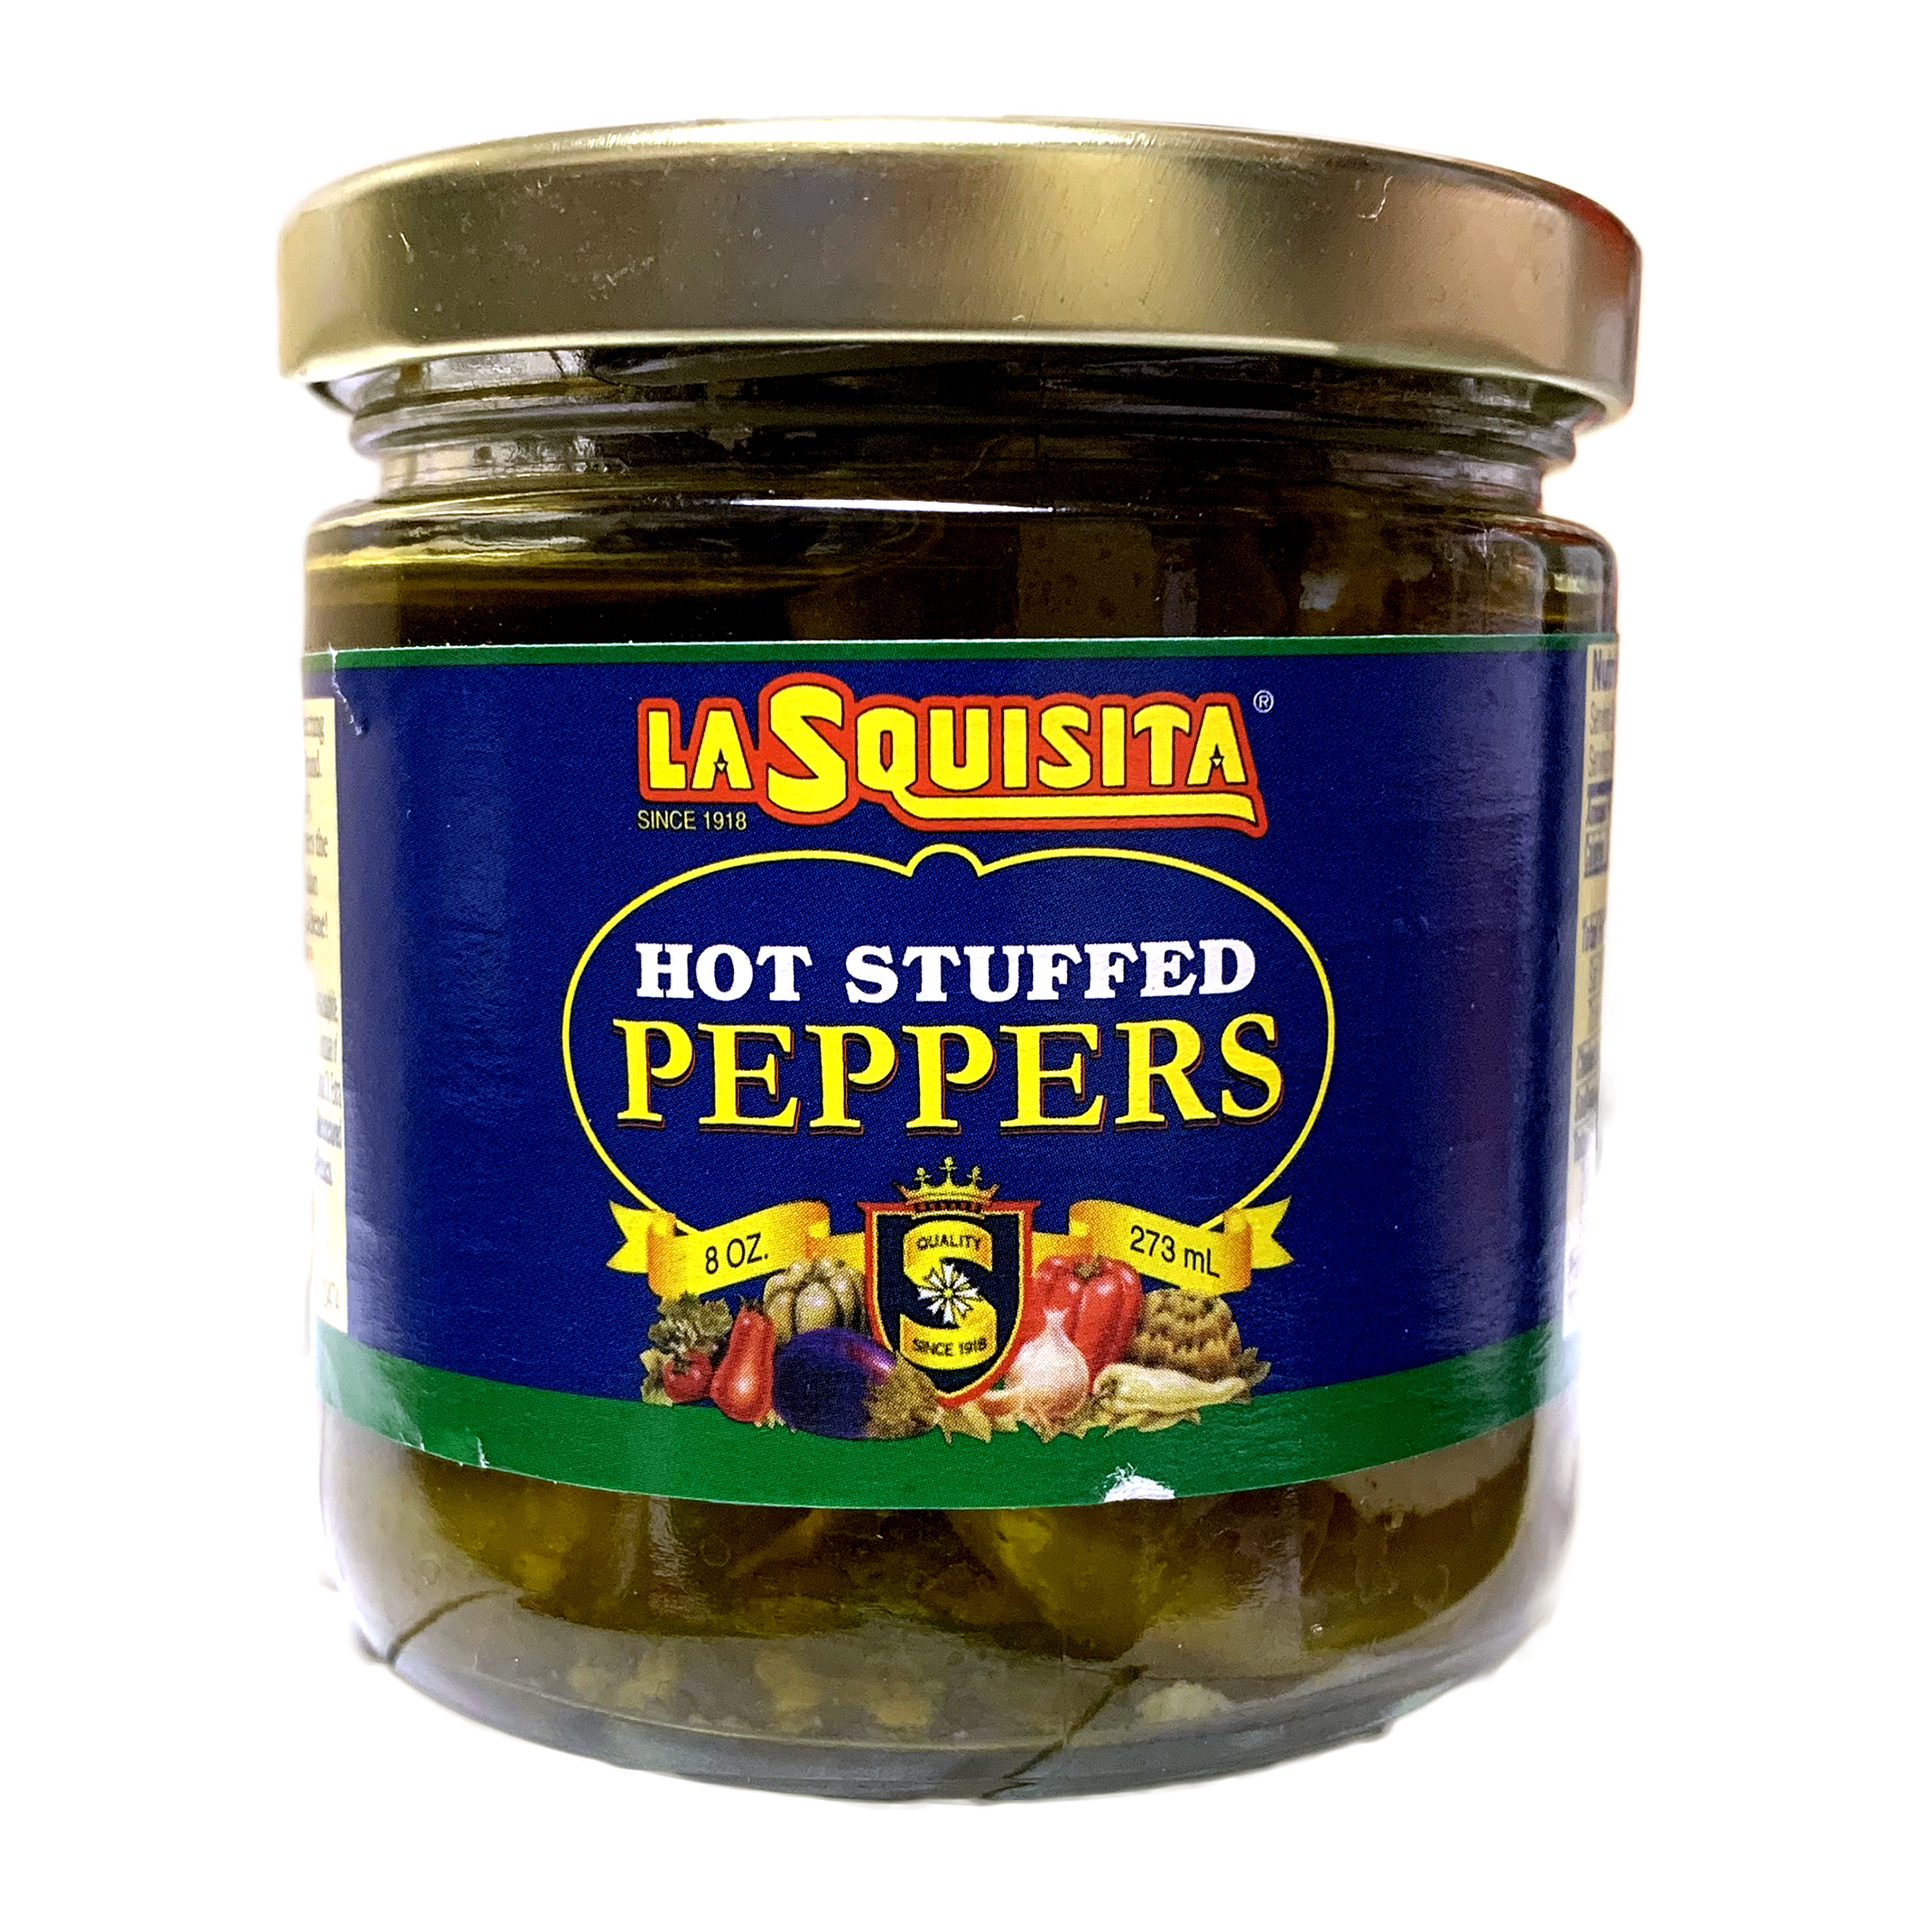 La Squisita Hot Stuffed Peppers, 8 oz (273ml)